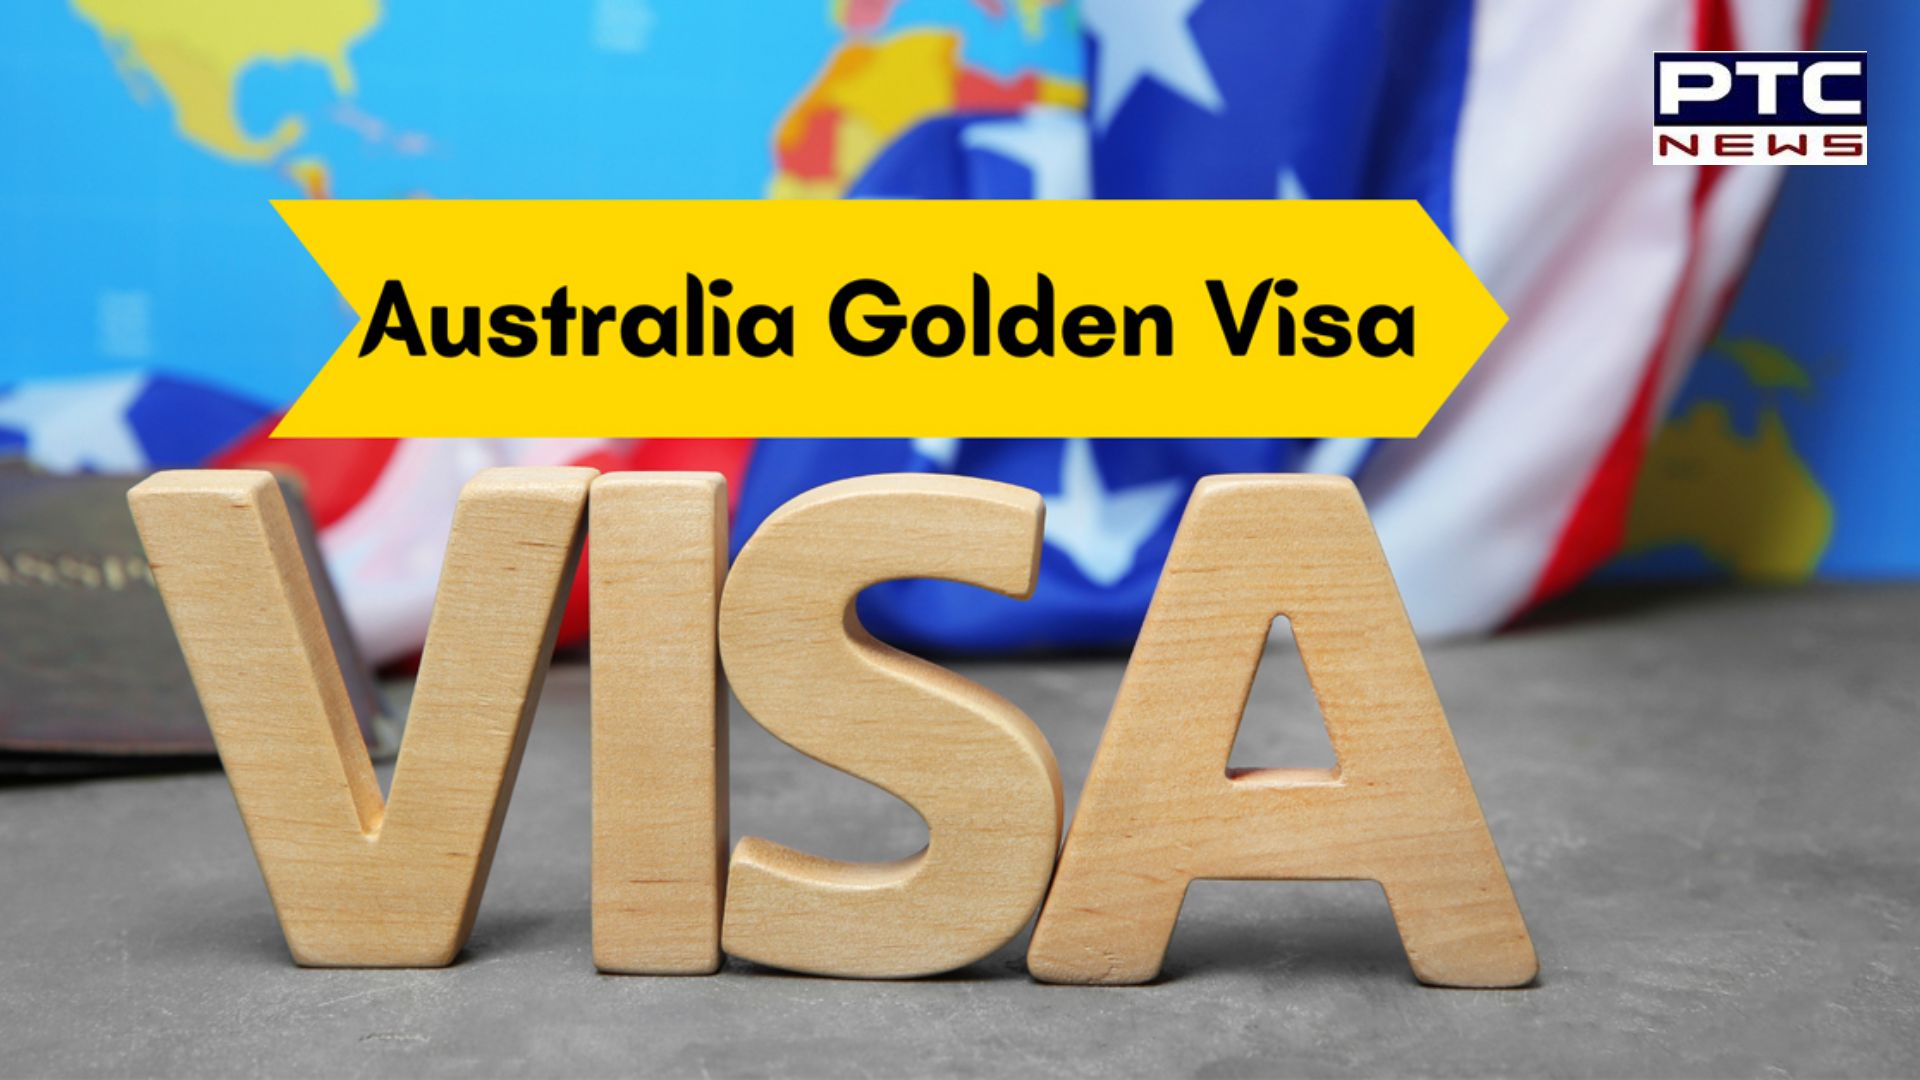 UK ਤੋਂ ਬਾਅਦ ਆਸਟ੍ਰੇਲੀਆ ਨੇ ਬੰਦ ਕੀਤਾ Golden Visa, ਜਾਣੋ ਕੀ ਹੋਵੇਗਾ ਅਸਰ